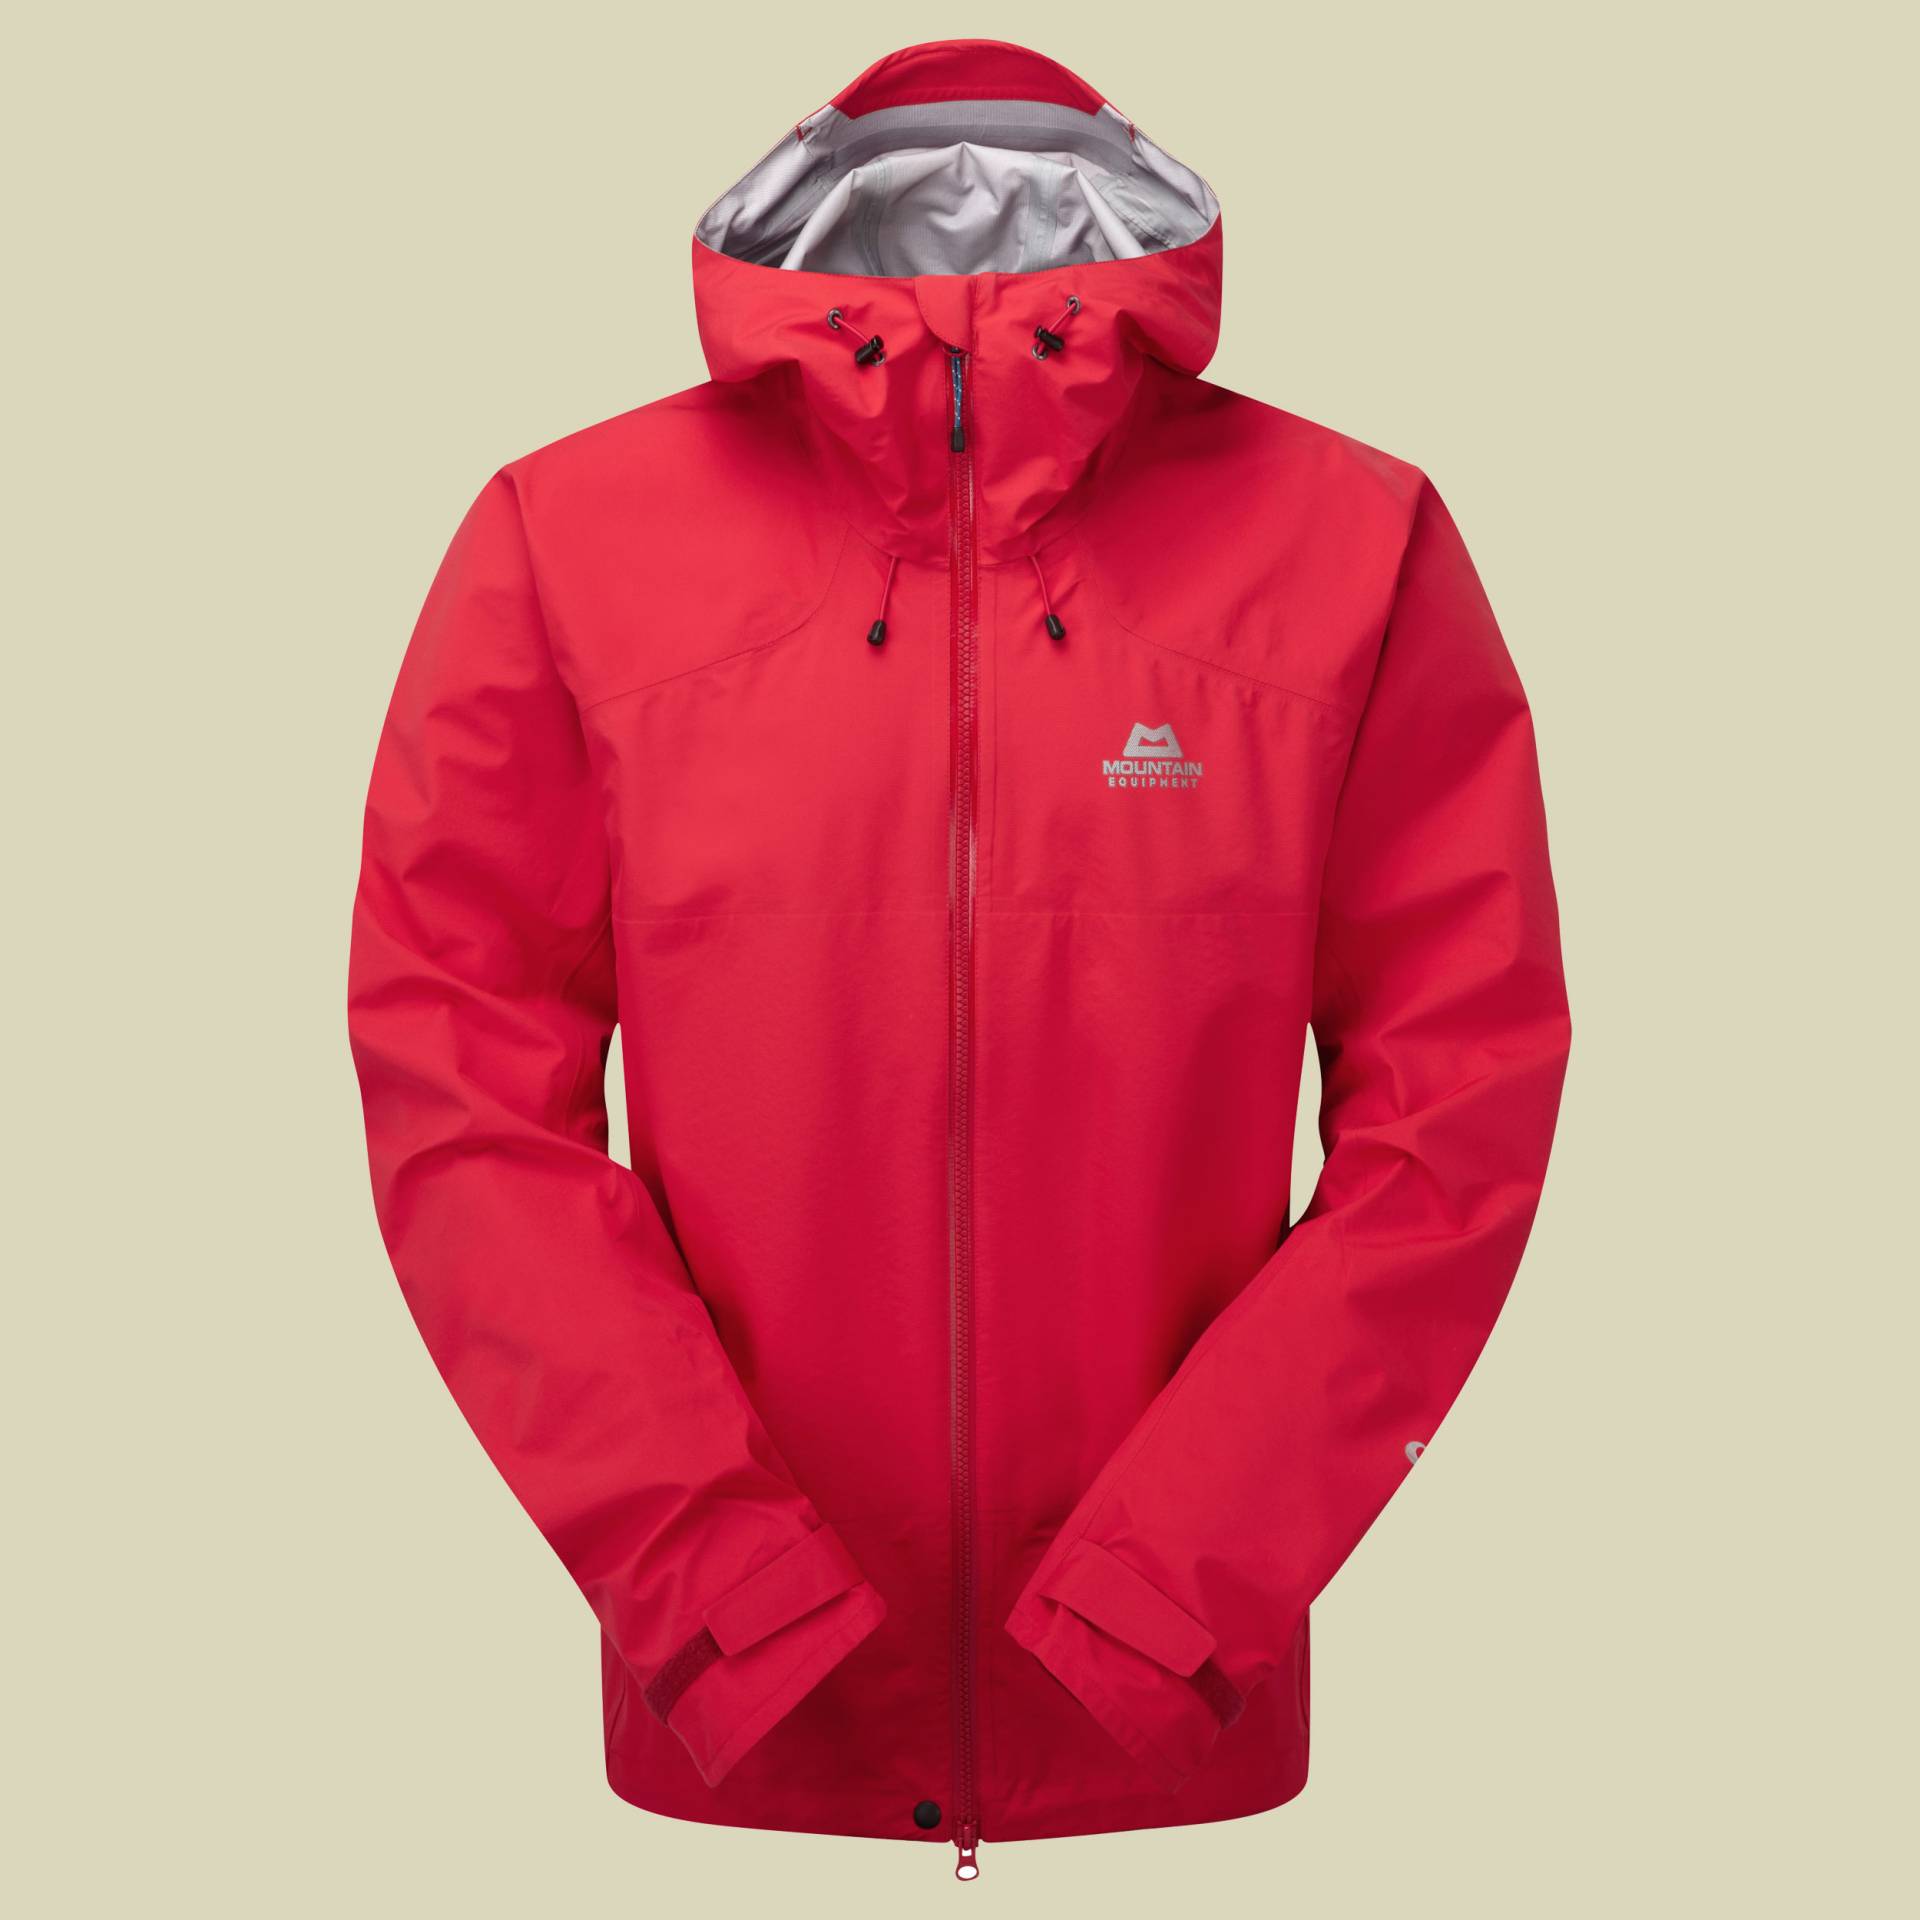 Odyssey Jacket Men Größe S Farbe imperial red von Mountain Equipment